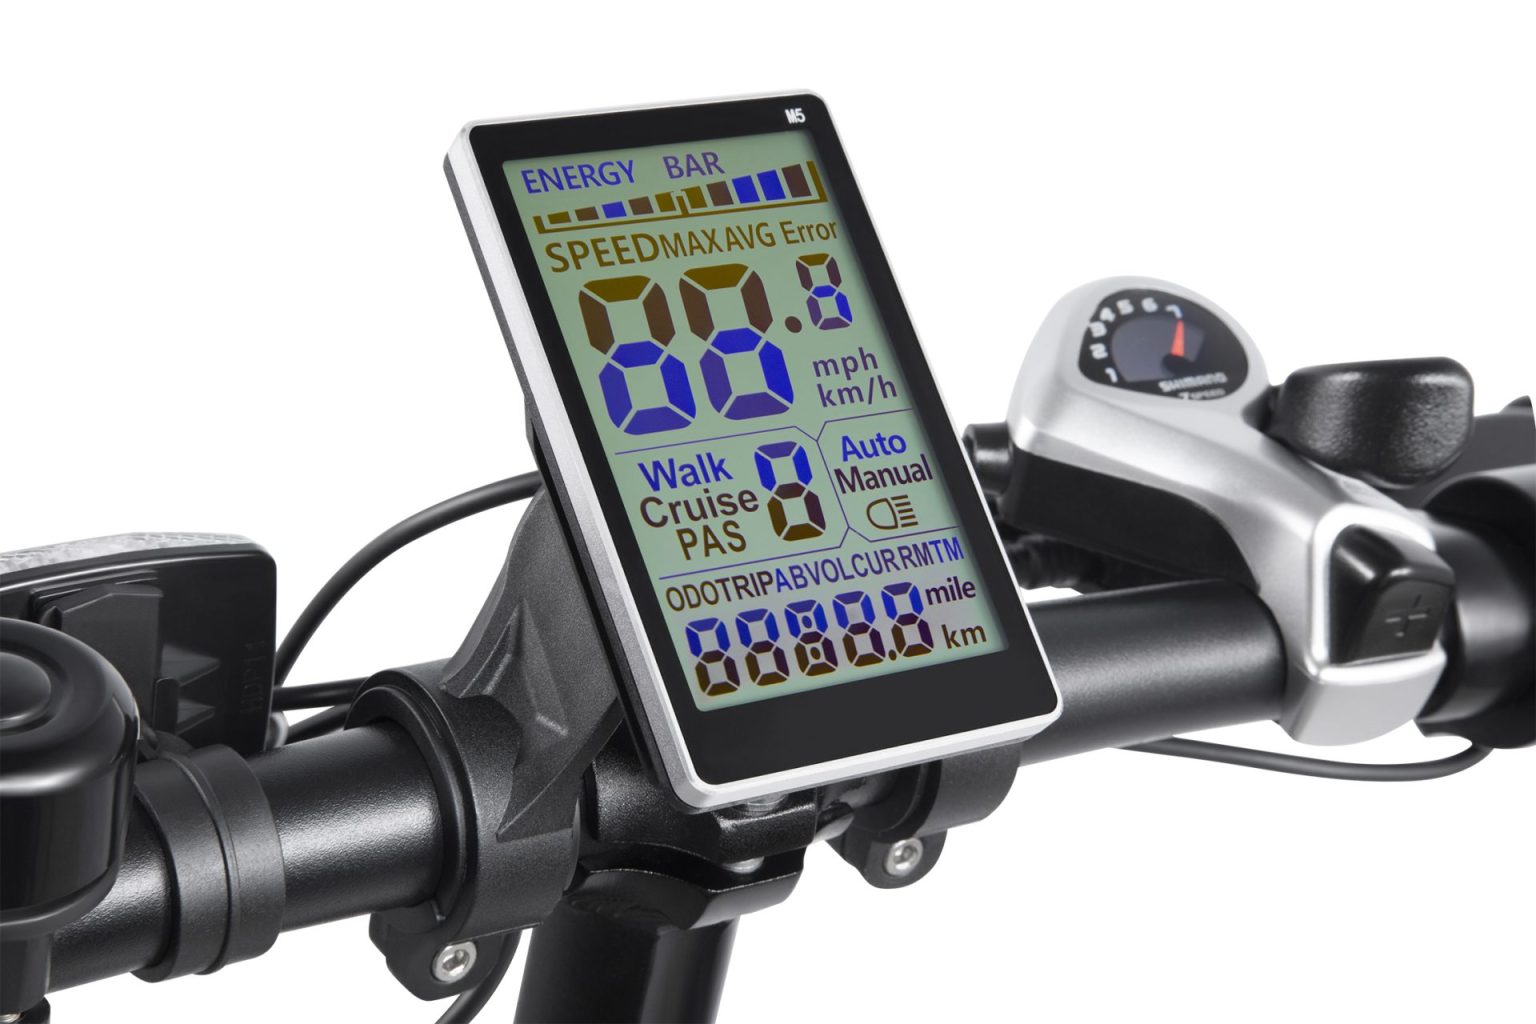 سستة دراجة كهربائية رخيصة قابلة للطي دراجة كهربائية دراجات كهربائية عملاقة دراجة كهربائية شركة دراجة ثلاثية العجلات الكهربائية للبالغين بالقرب مني مجموعة سور رون